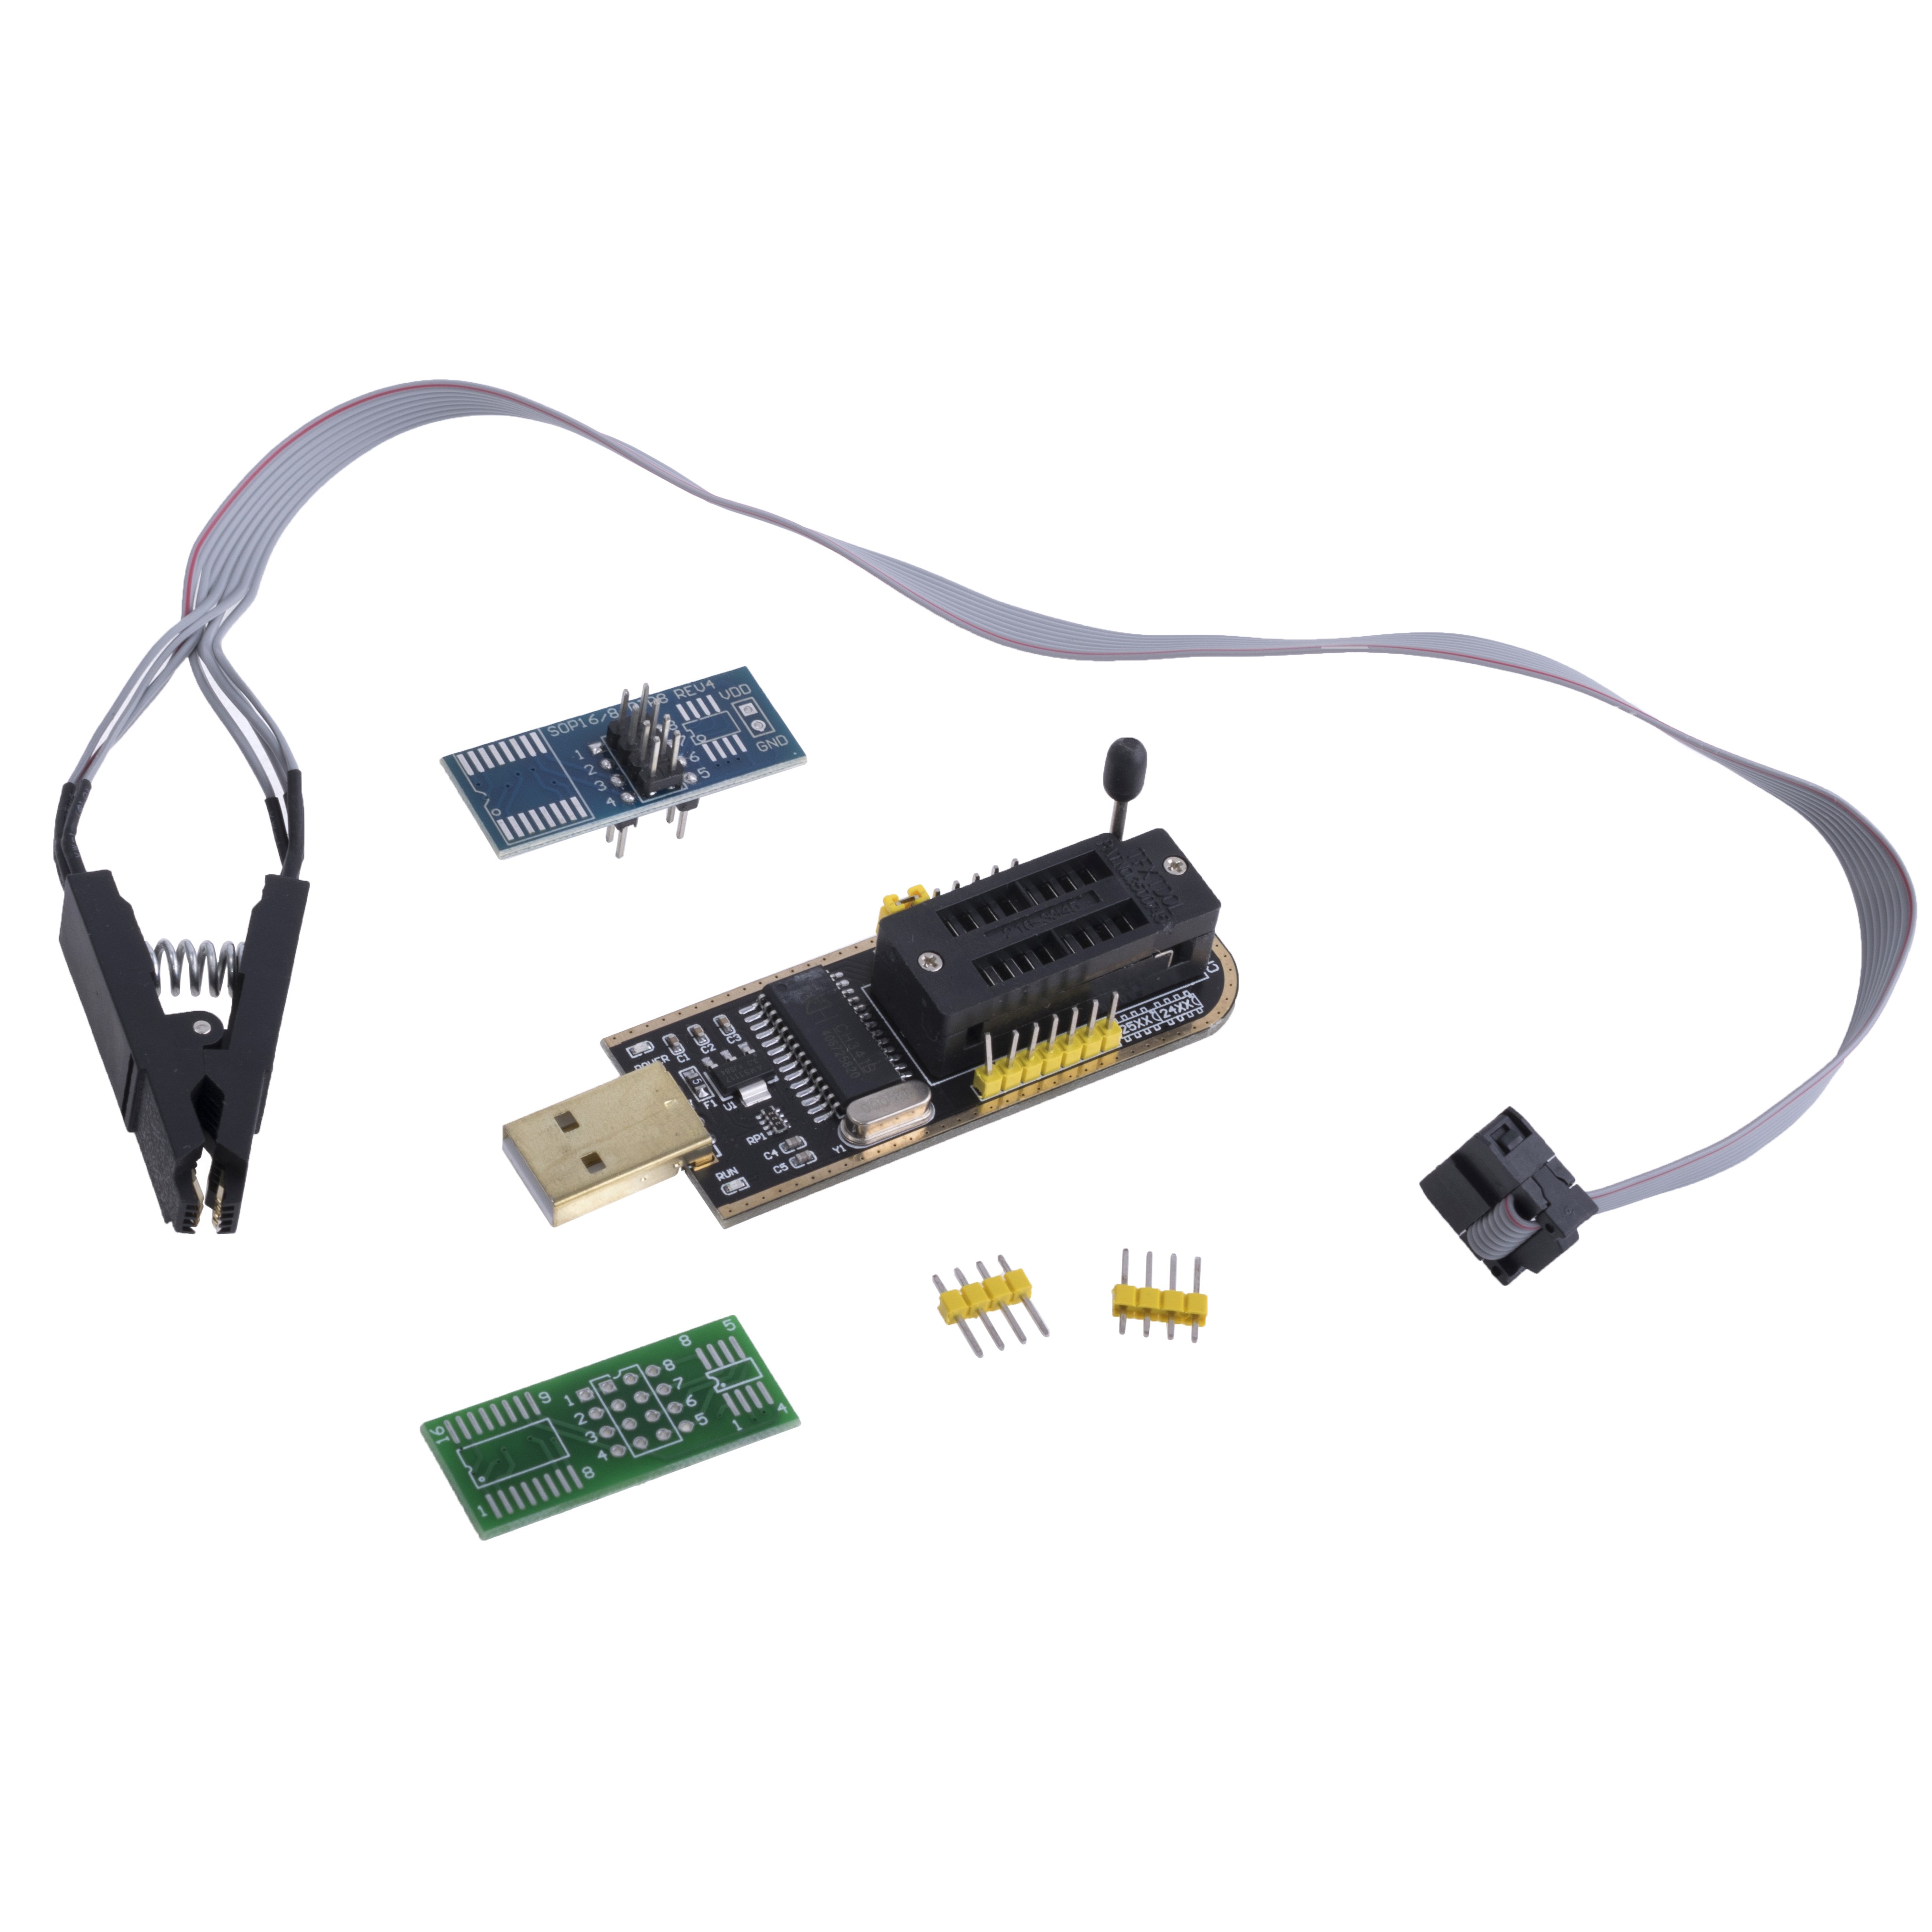 Многофункциональный USB-программатор CH341A + клипса для программирования SO-8 внутриплатно